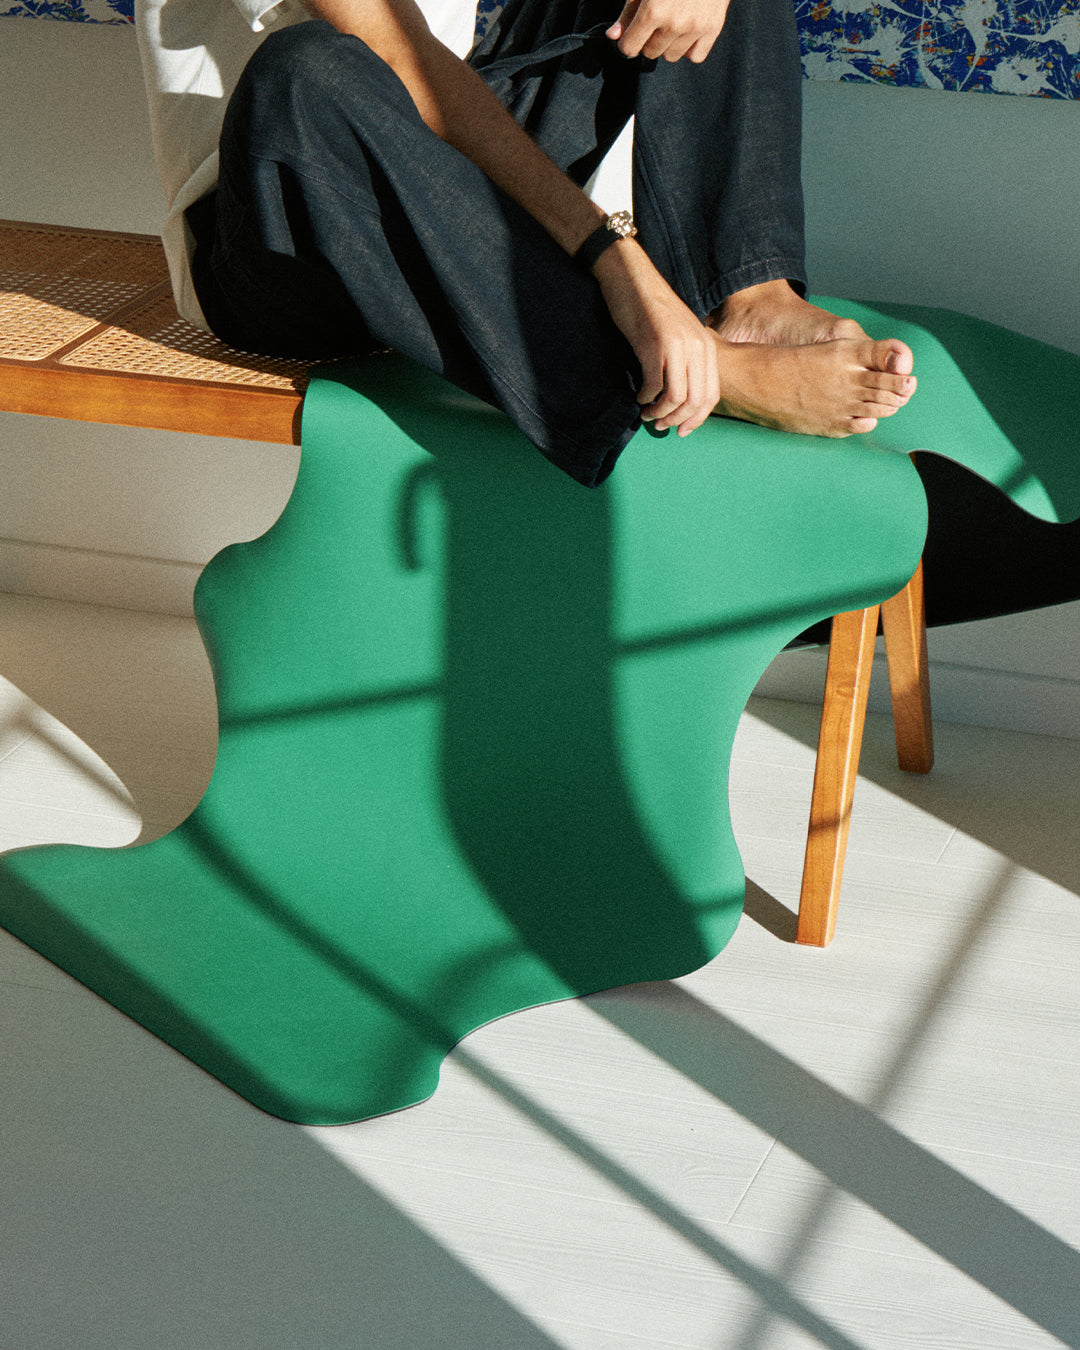 Tapis de sol pour le yoga de la marque hercule studio modèle mar couleur golf green photo zoomée sur un banc